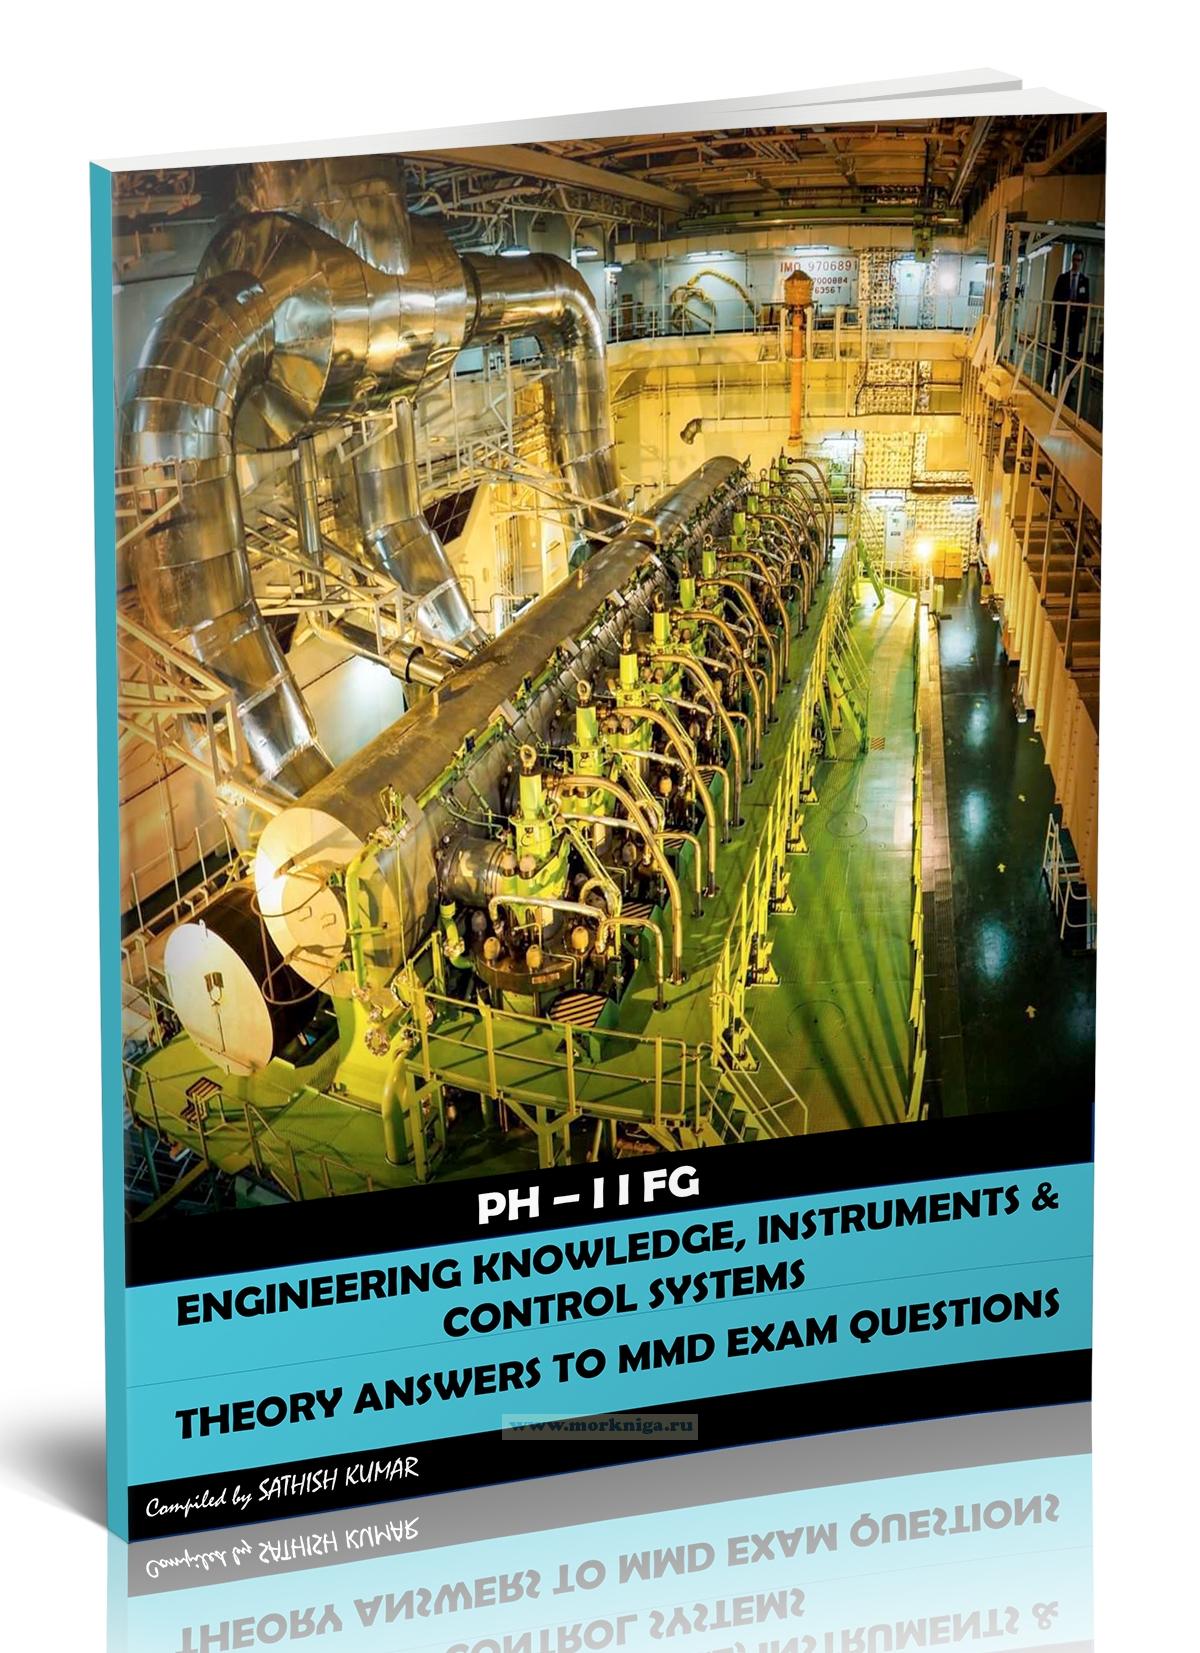 PH-II FG. Engineering Knowledge, Instruments & Control Systems. Theory Answers to MMD Exam Questions/Инженерные знания, приборы и системы управления. Теоретические ответы на экзаменационные вопросы PH-II FG MMD